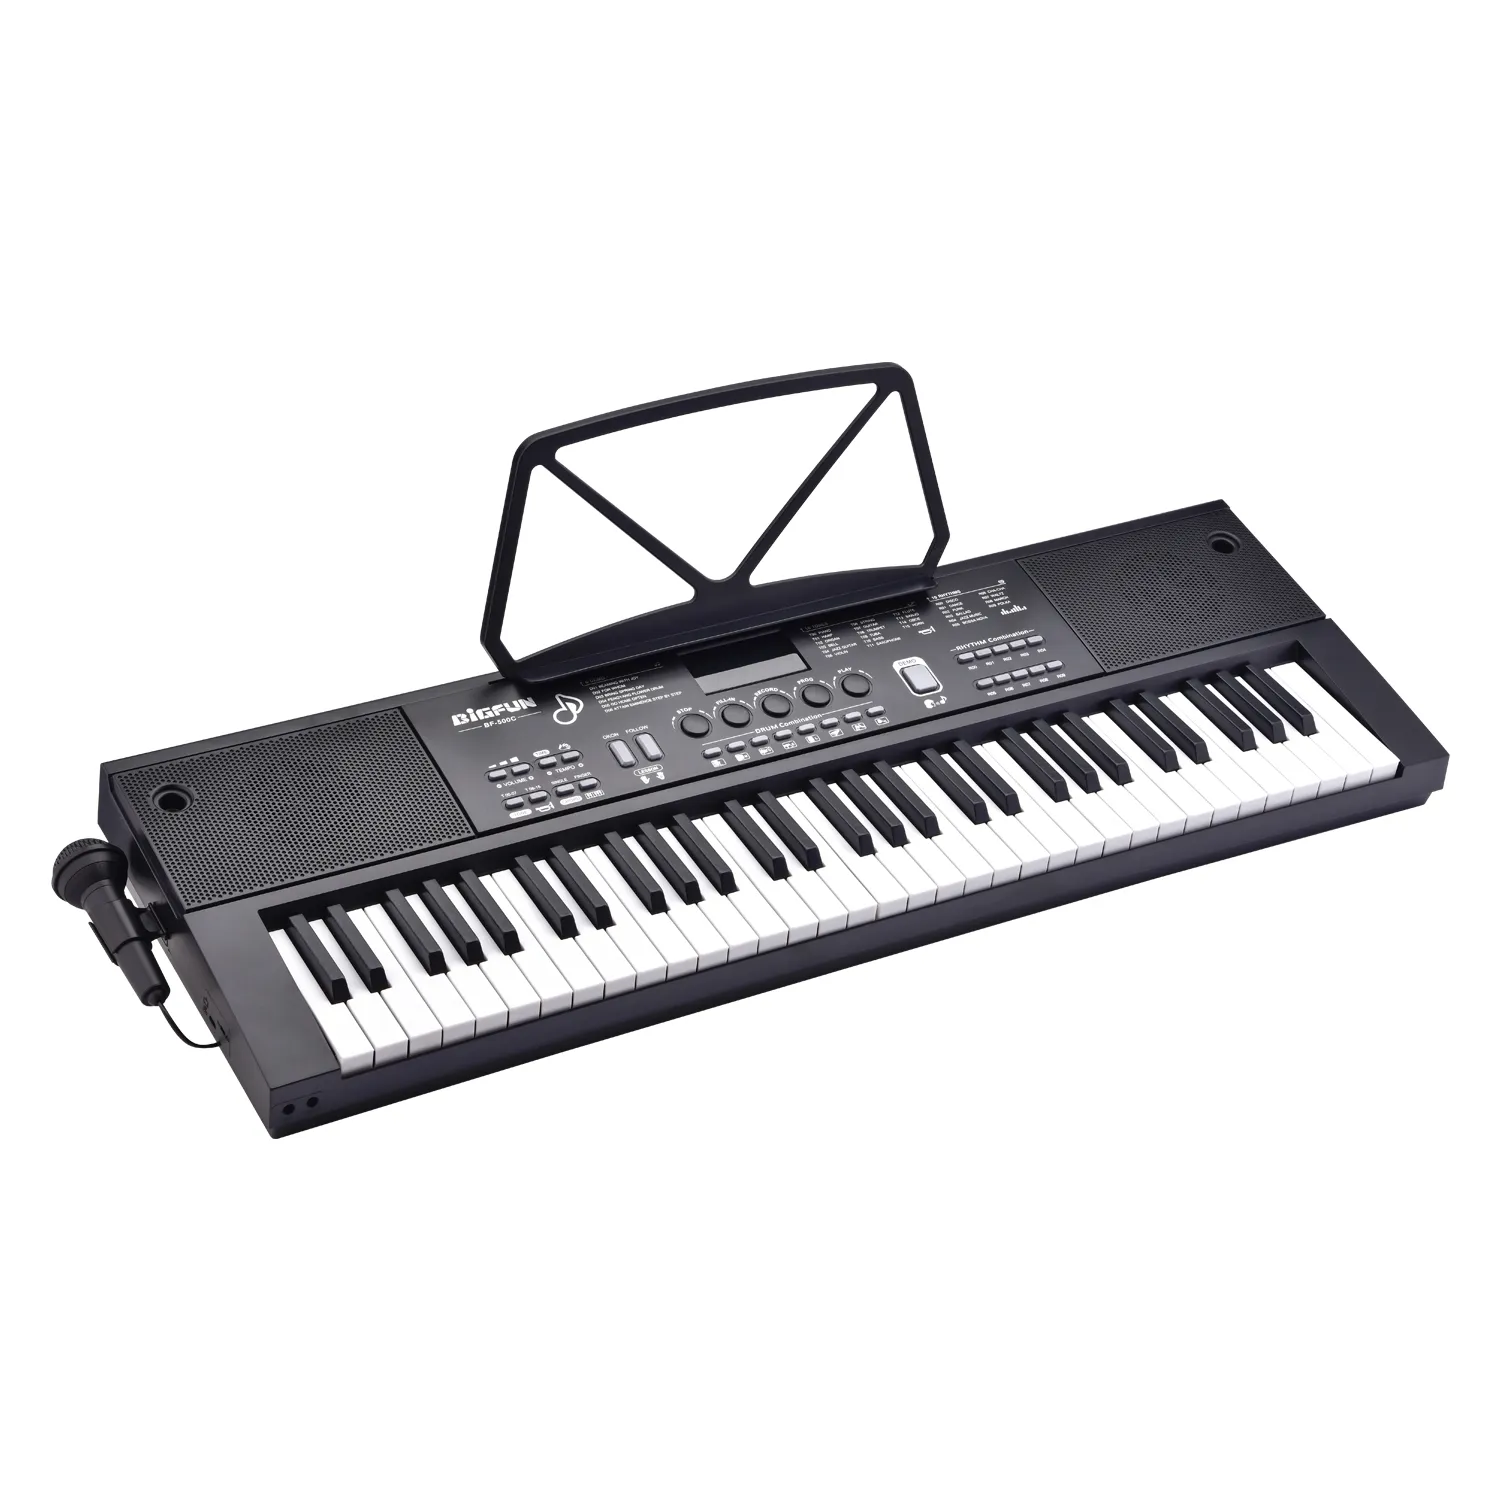 Çocuklar için mikrofon ile BF-500C yüksek kalite taşınabilir elektronik piyano elektronik müzik piyano klavyesi